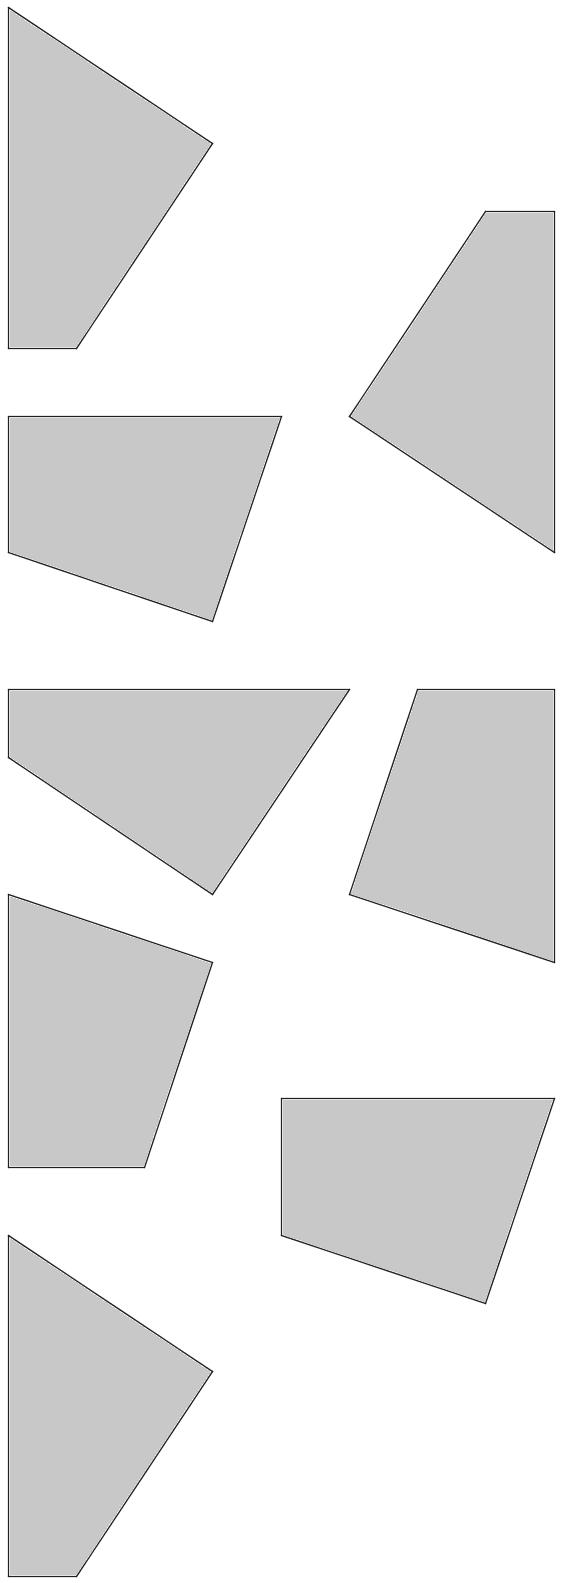 9 Viereckspuzzle Schneide die acht Vierecke aus und füge je vier zu einem Quadrat zusammen.